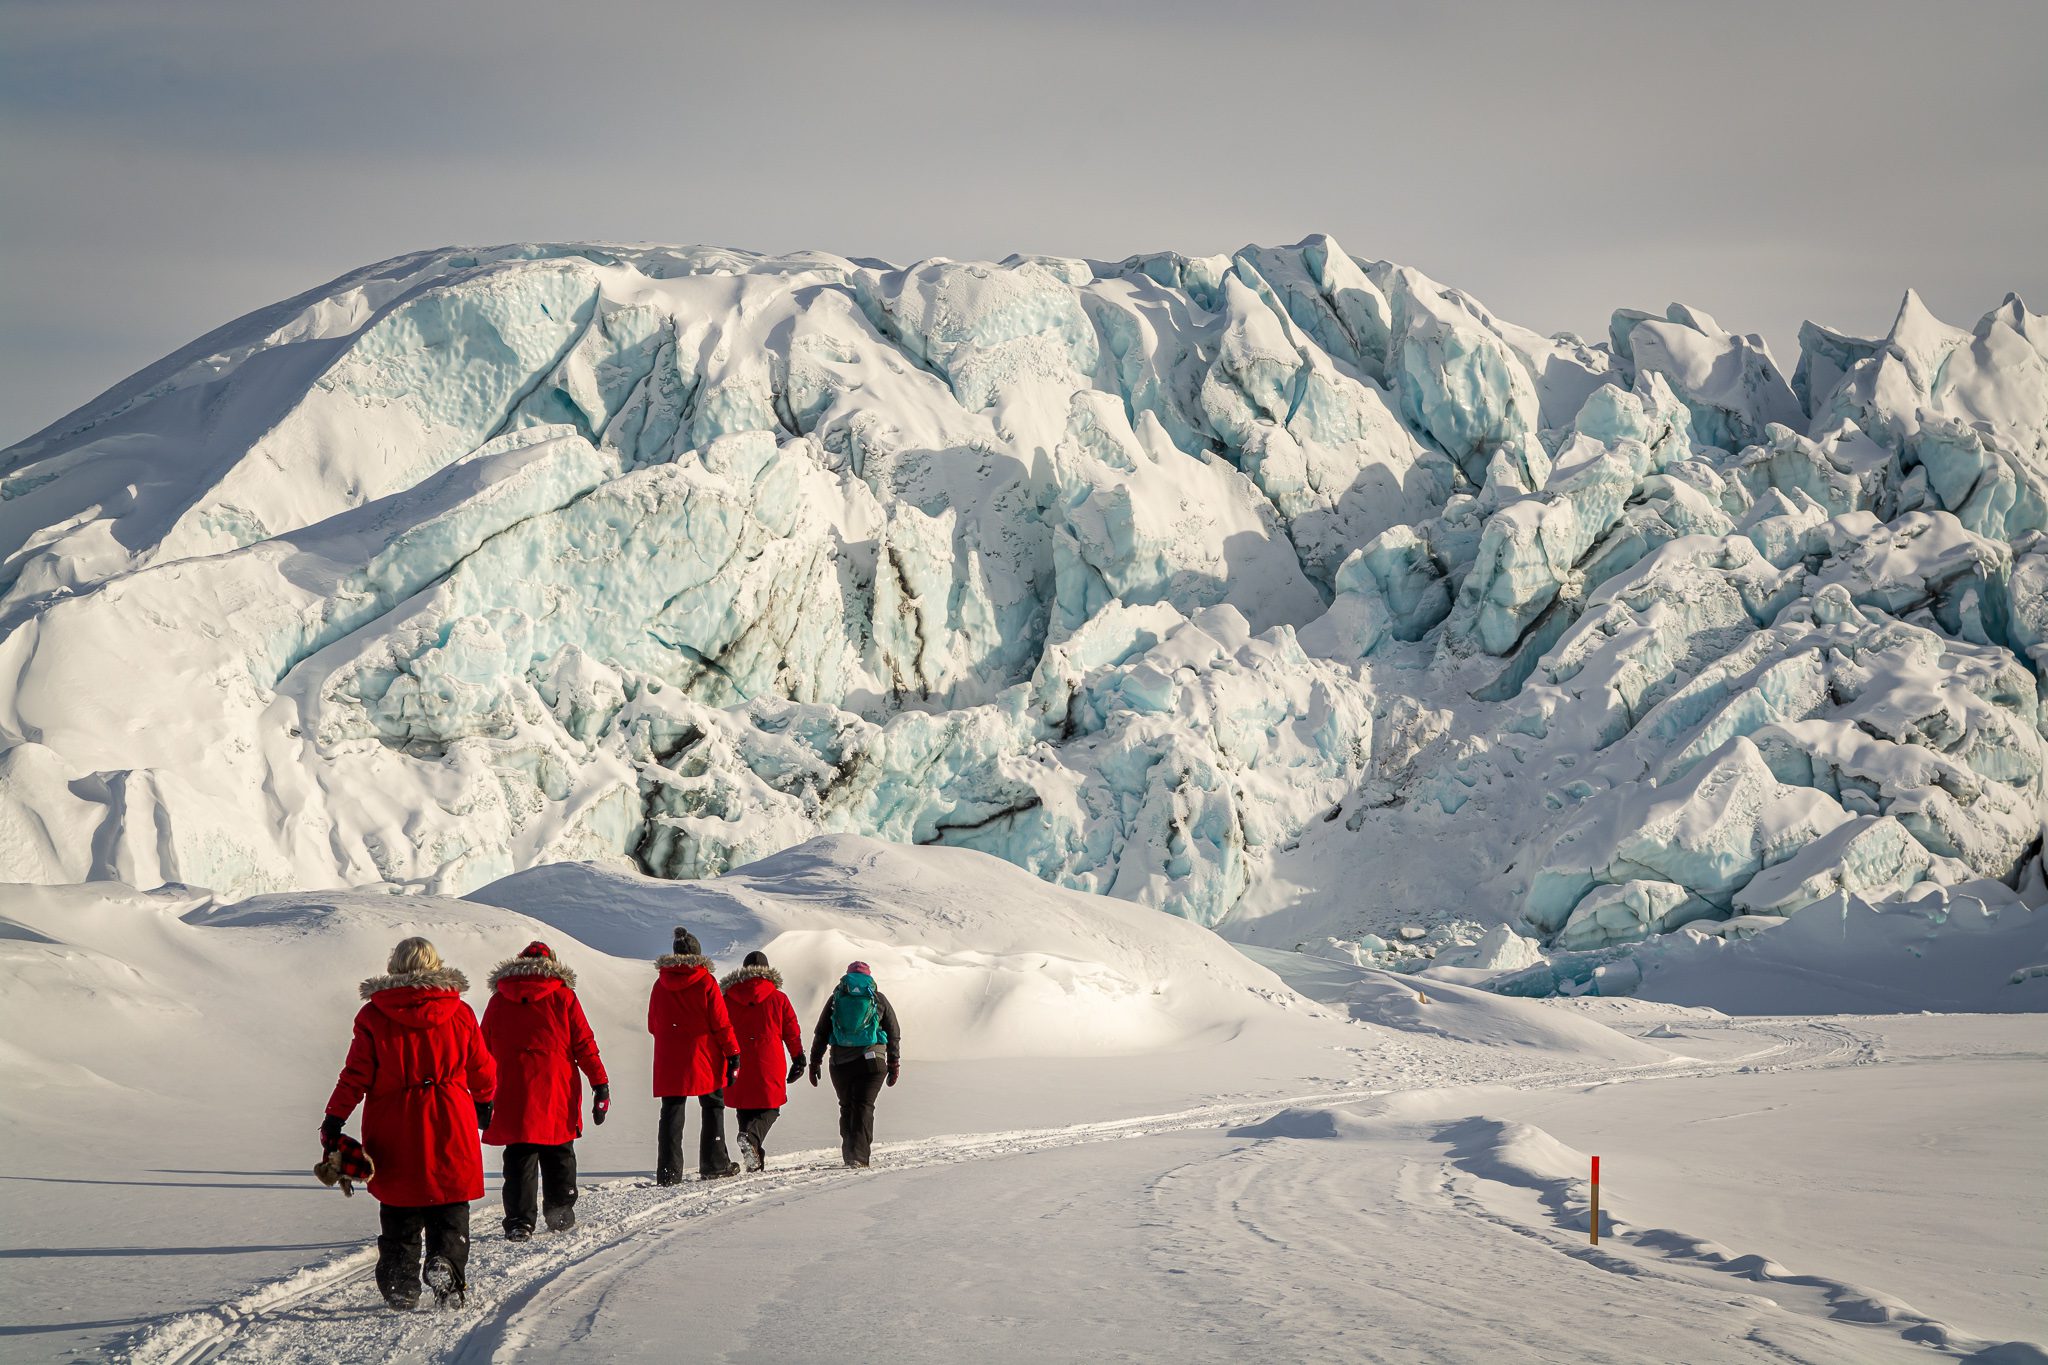 Matanuska glacier tour in winter